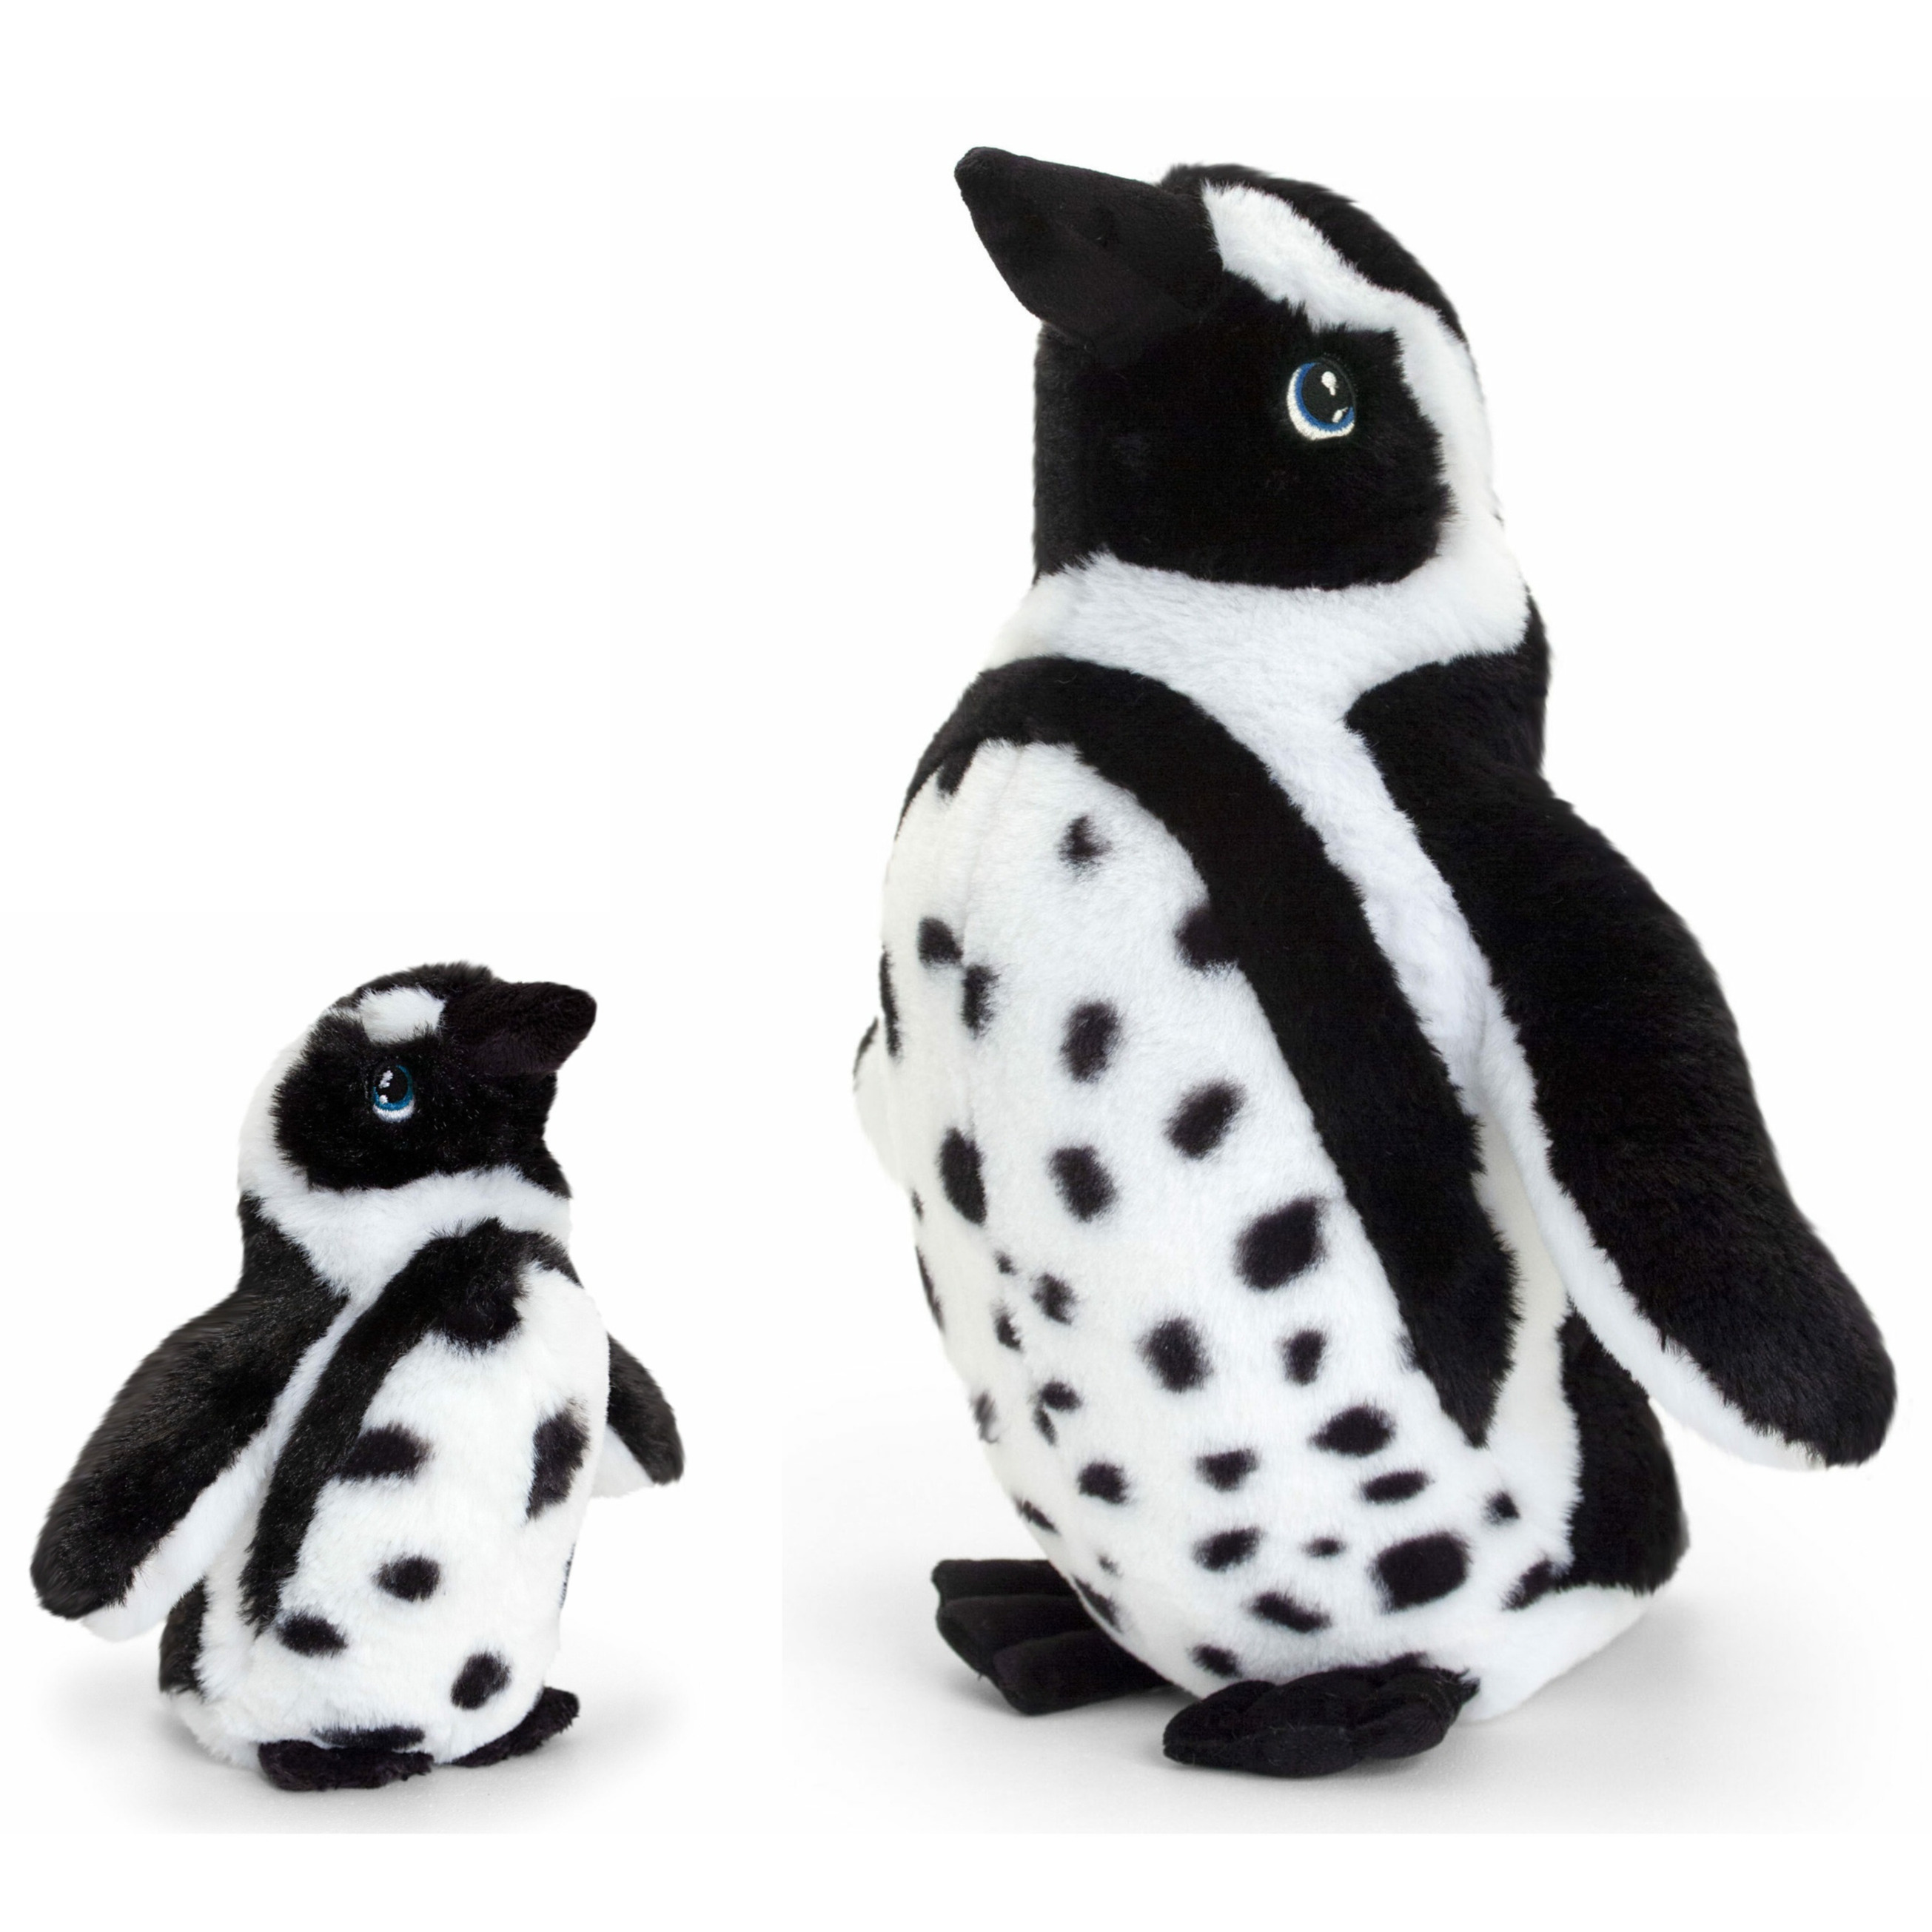 Merkloos Keel Toys pluche Humboldt pinguin knuffeldieren - wit/zwart - staand - 18 en cm -